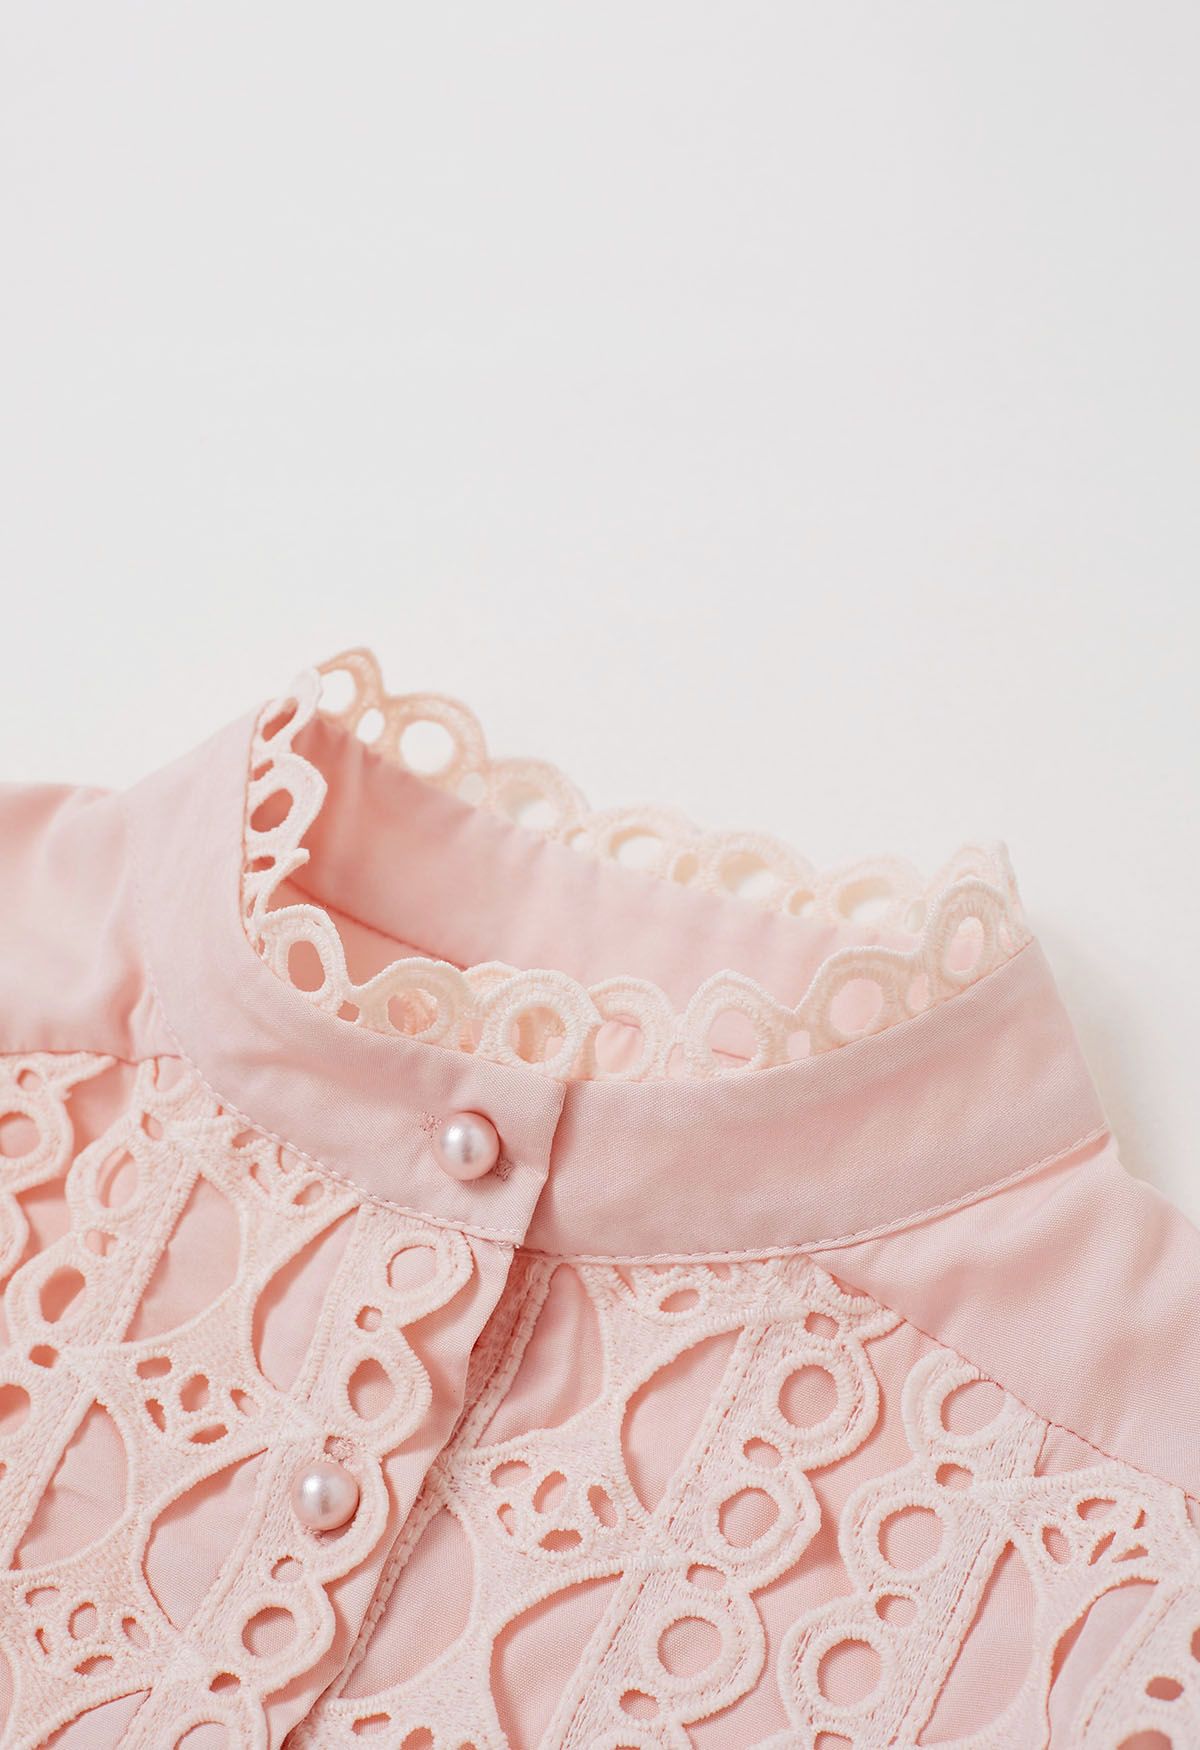 Chemise boutonnée à manches bulles et découpes exquises en rose